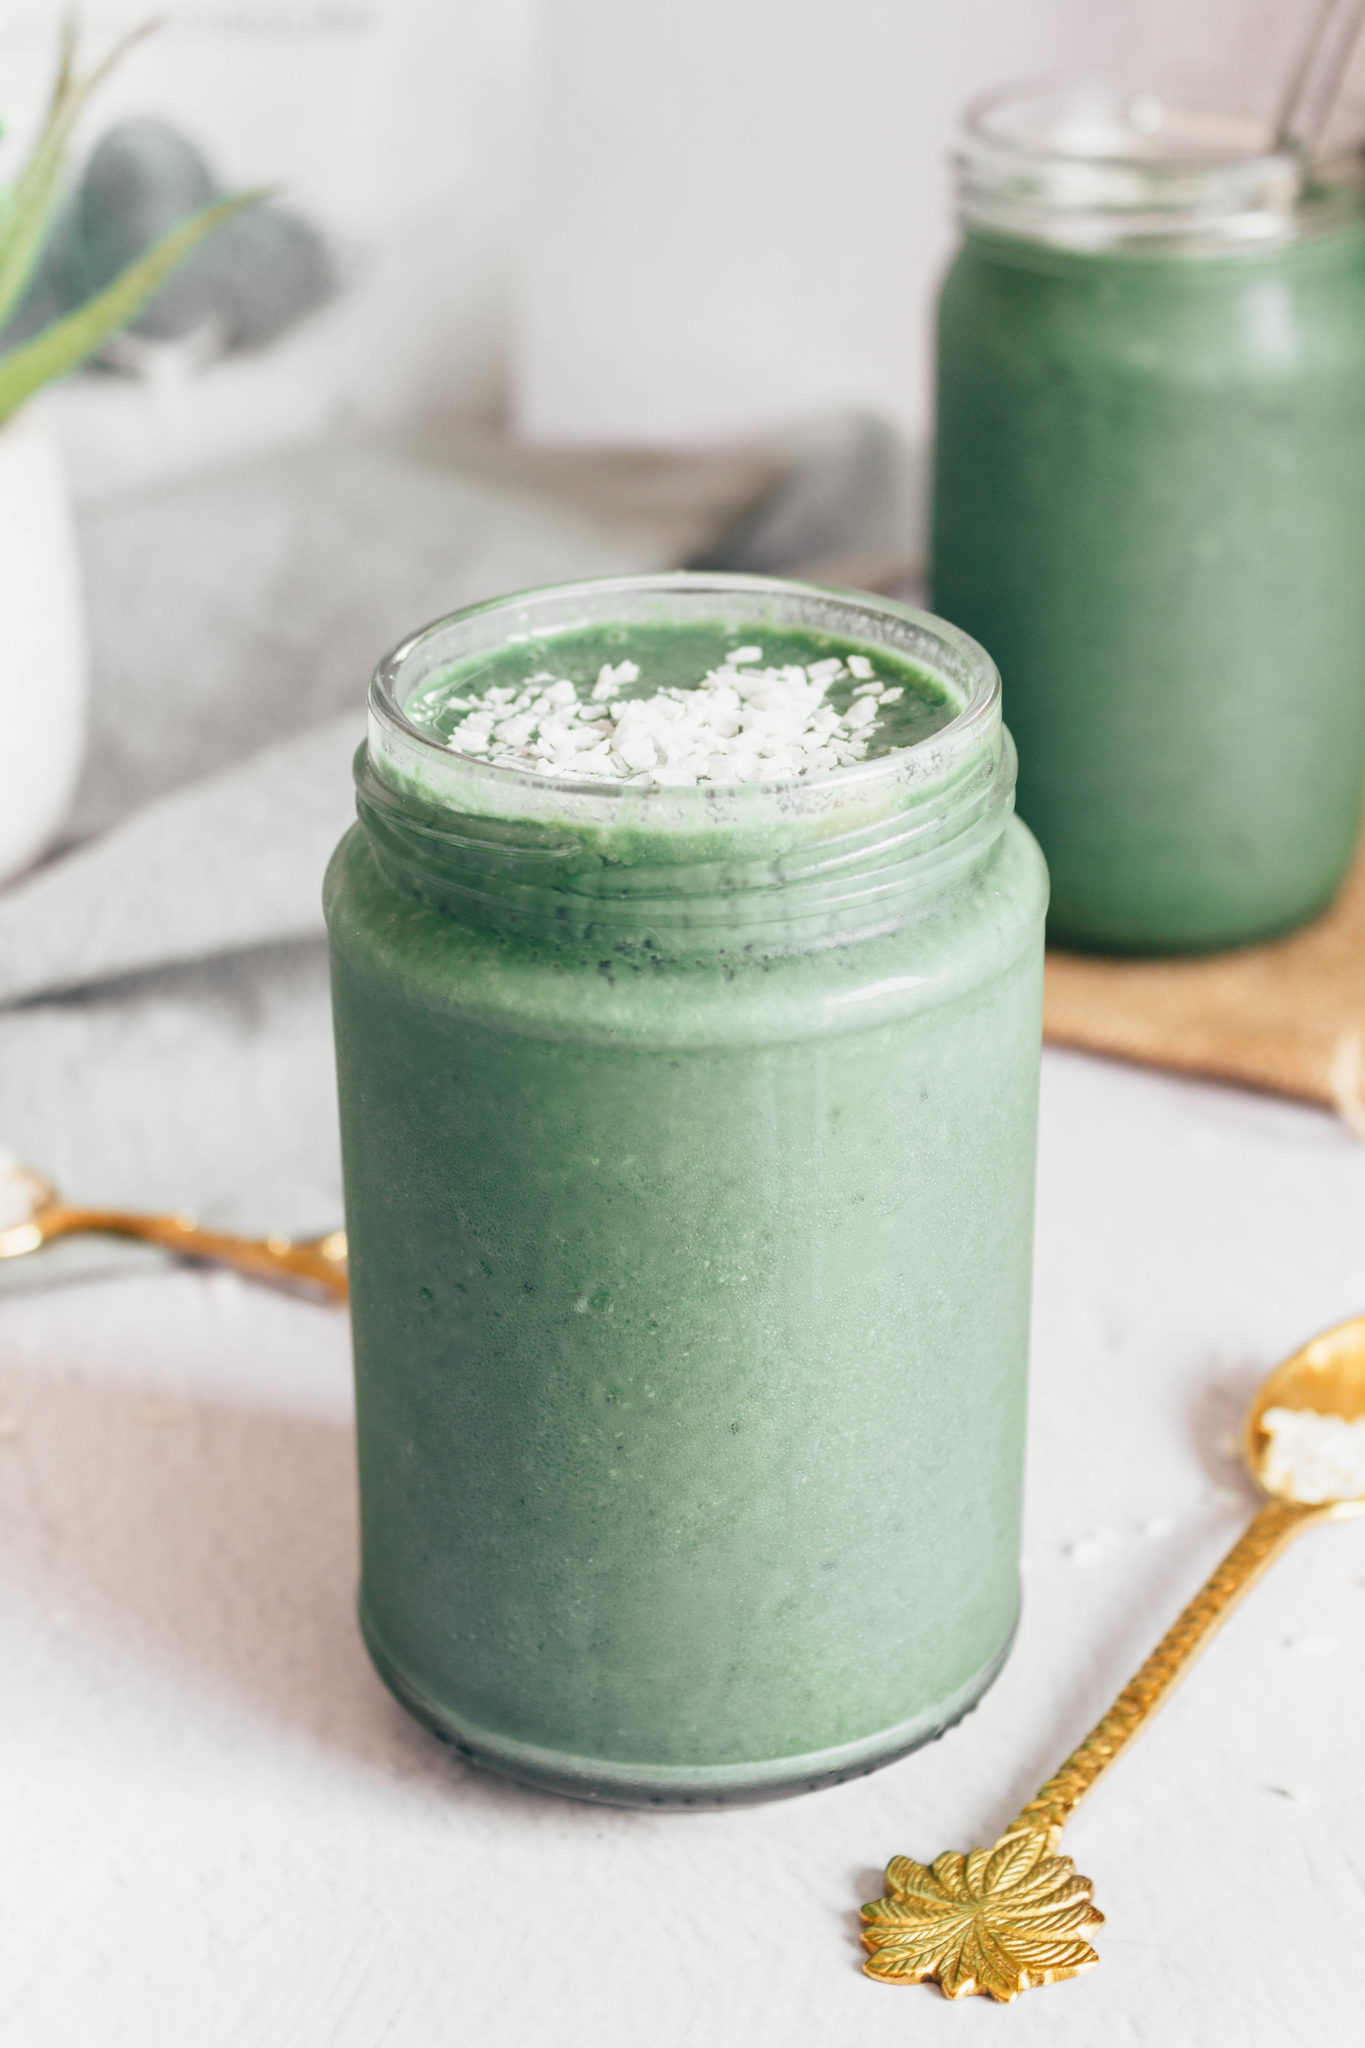 Green spirulina smoothie in a jar